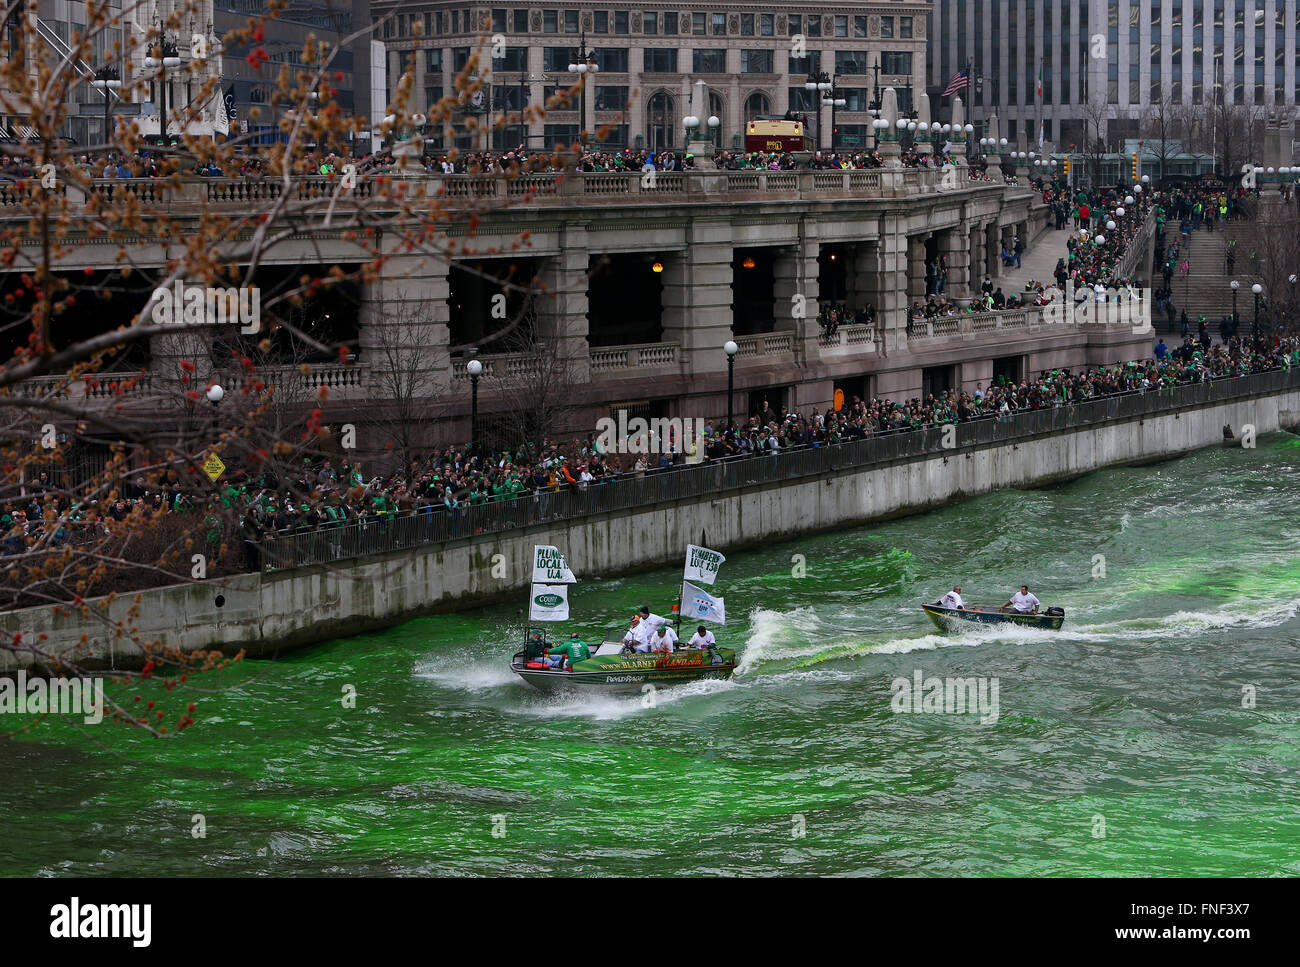 La rivière Chicago est teint en vert par les membres de l'union des plombiers en l'honneur de la Saint-Patrick. Banque D'Images